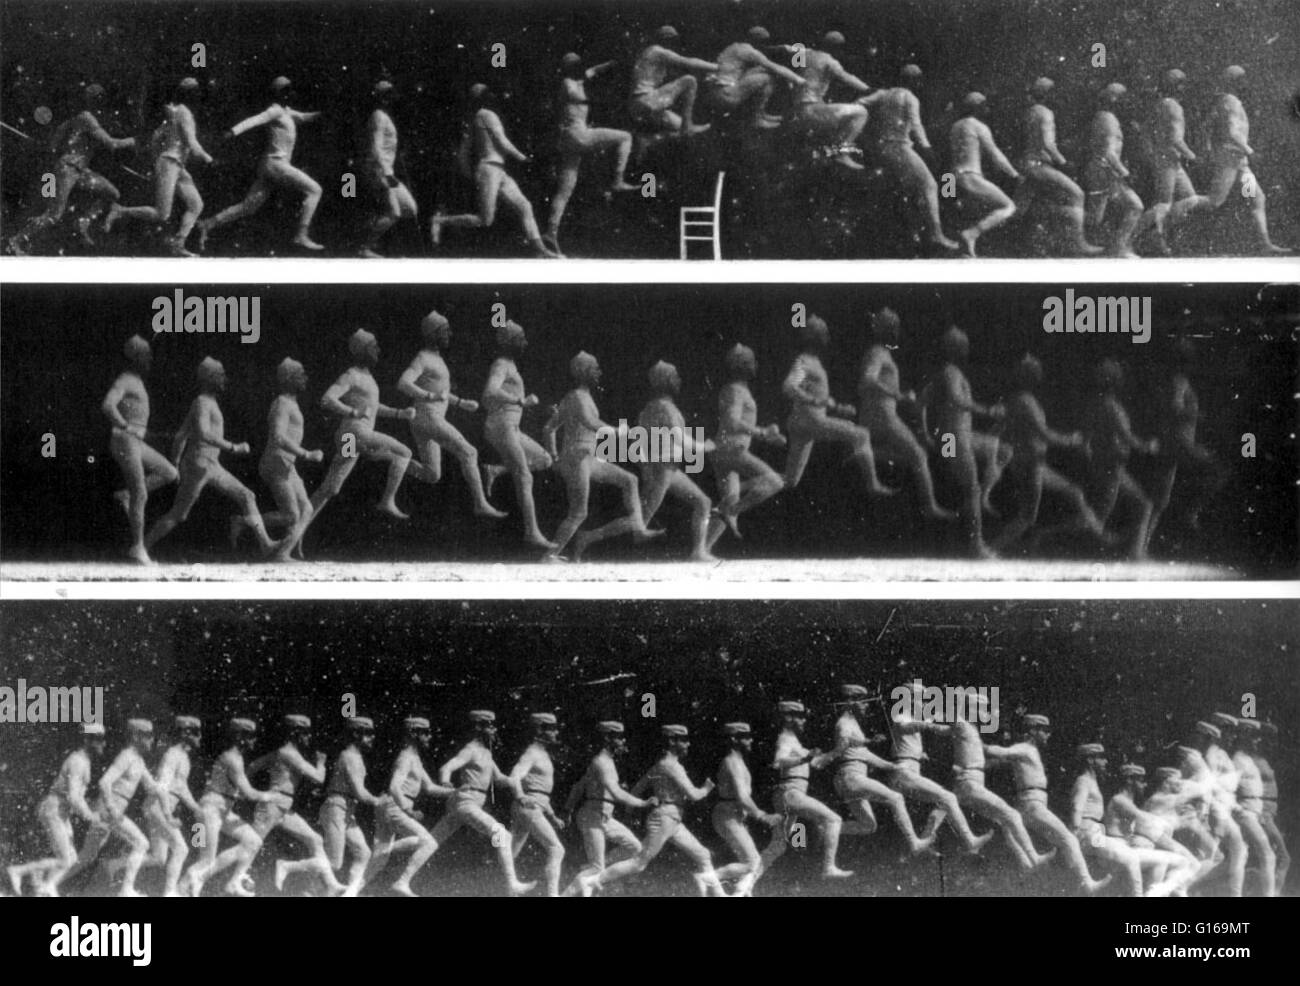 Étienne-Jules Marey (5. März 1830 - 21. Mai 1904) war ein französischer Wissenschaftler, Physiologe und Chronofotografen. Er begann durch das Studium der Blutzirkulation im menschlichen Körper. Dann verlagerte sich auf die Analyse von Herzschlag, Atmung, Muskeln (Myographie) und Bewegung des Körpers. Er wurde durch Bewegungen der Luft fasziniert und begann Vögel zu studieren. Er nahm und in einem separaten Feld der Chronophotographie animierte Fotografie in den 1880er Jahren weiterentwickelt. Seine revolutionäre Idee war, mehrere Phasen der Bewegung auf einer fotografischen Oberfläche aufnehmen. Im Jahre 1882 machte er seine Chronophotographic-Waffe. Diese instrum Stockfoto